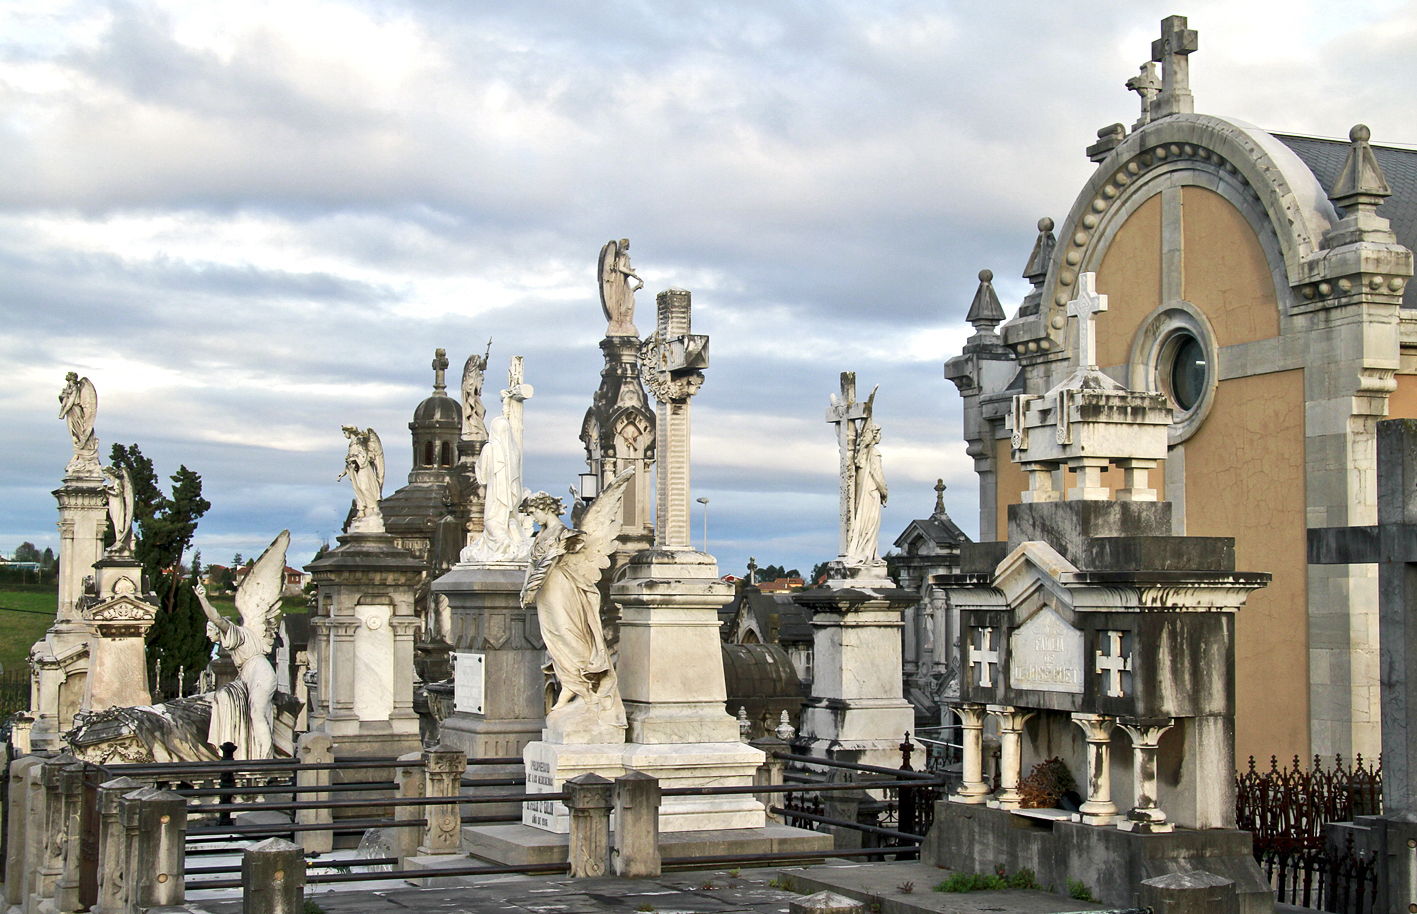 El Cementerio de La Carriona pertenece a la Ruta Europea de Cementerios y forma parte de ASCE